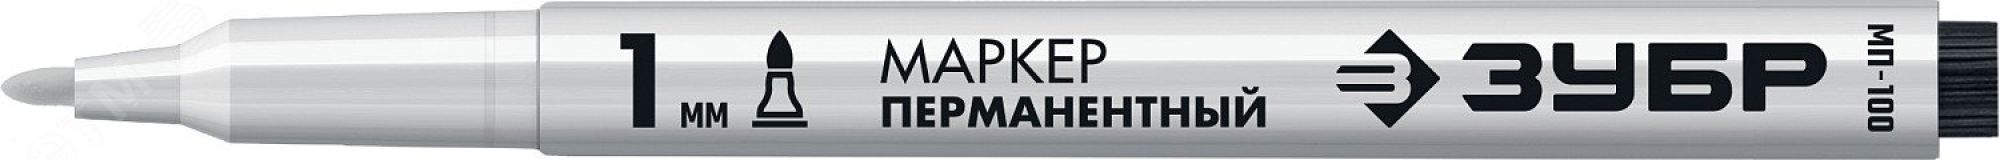 Маркер МП-100 белый, 1 мм заостренный перманентный 06320-8 ЗУБР